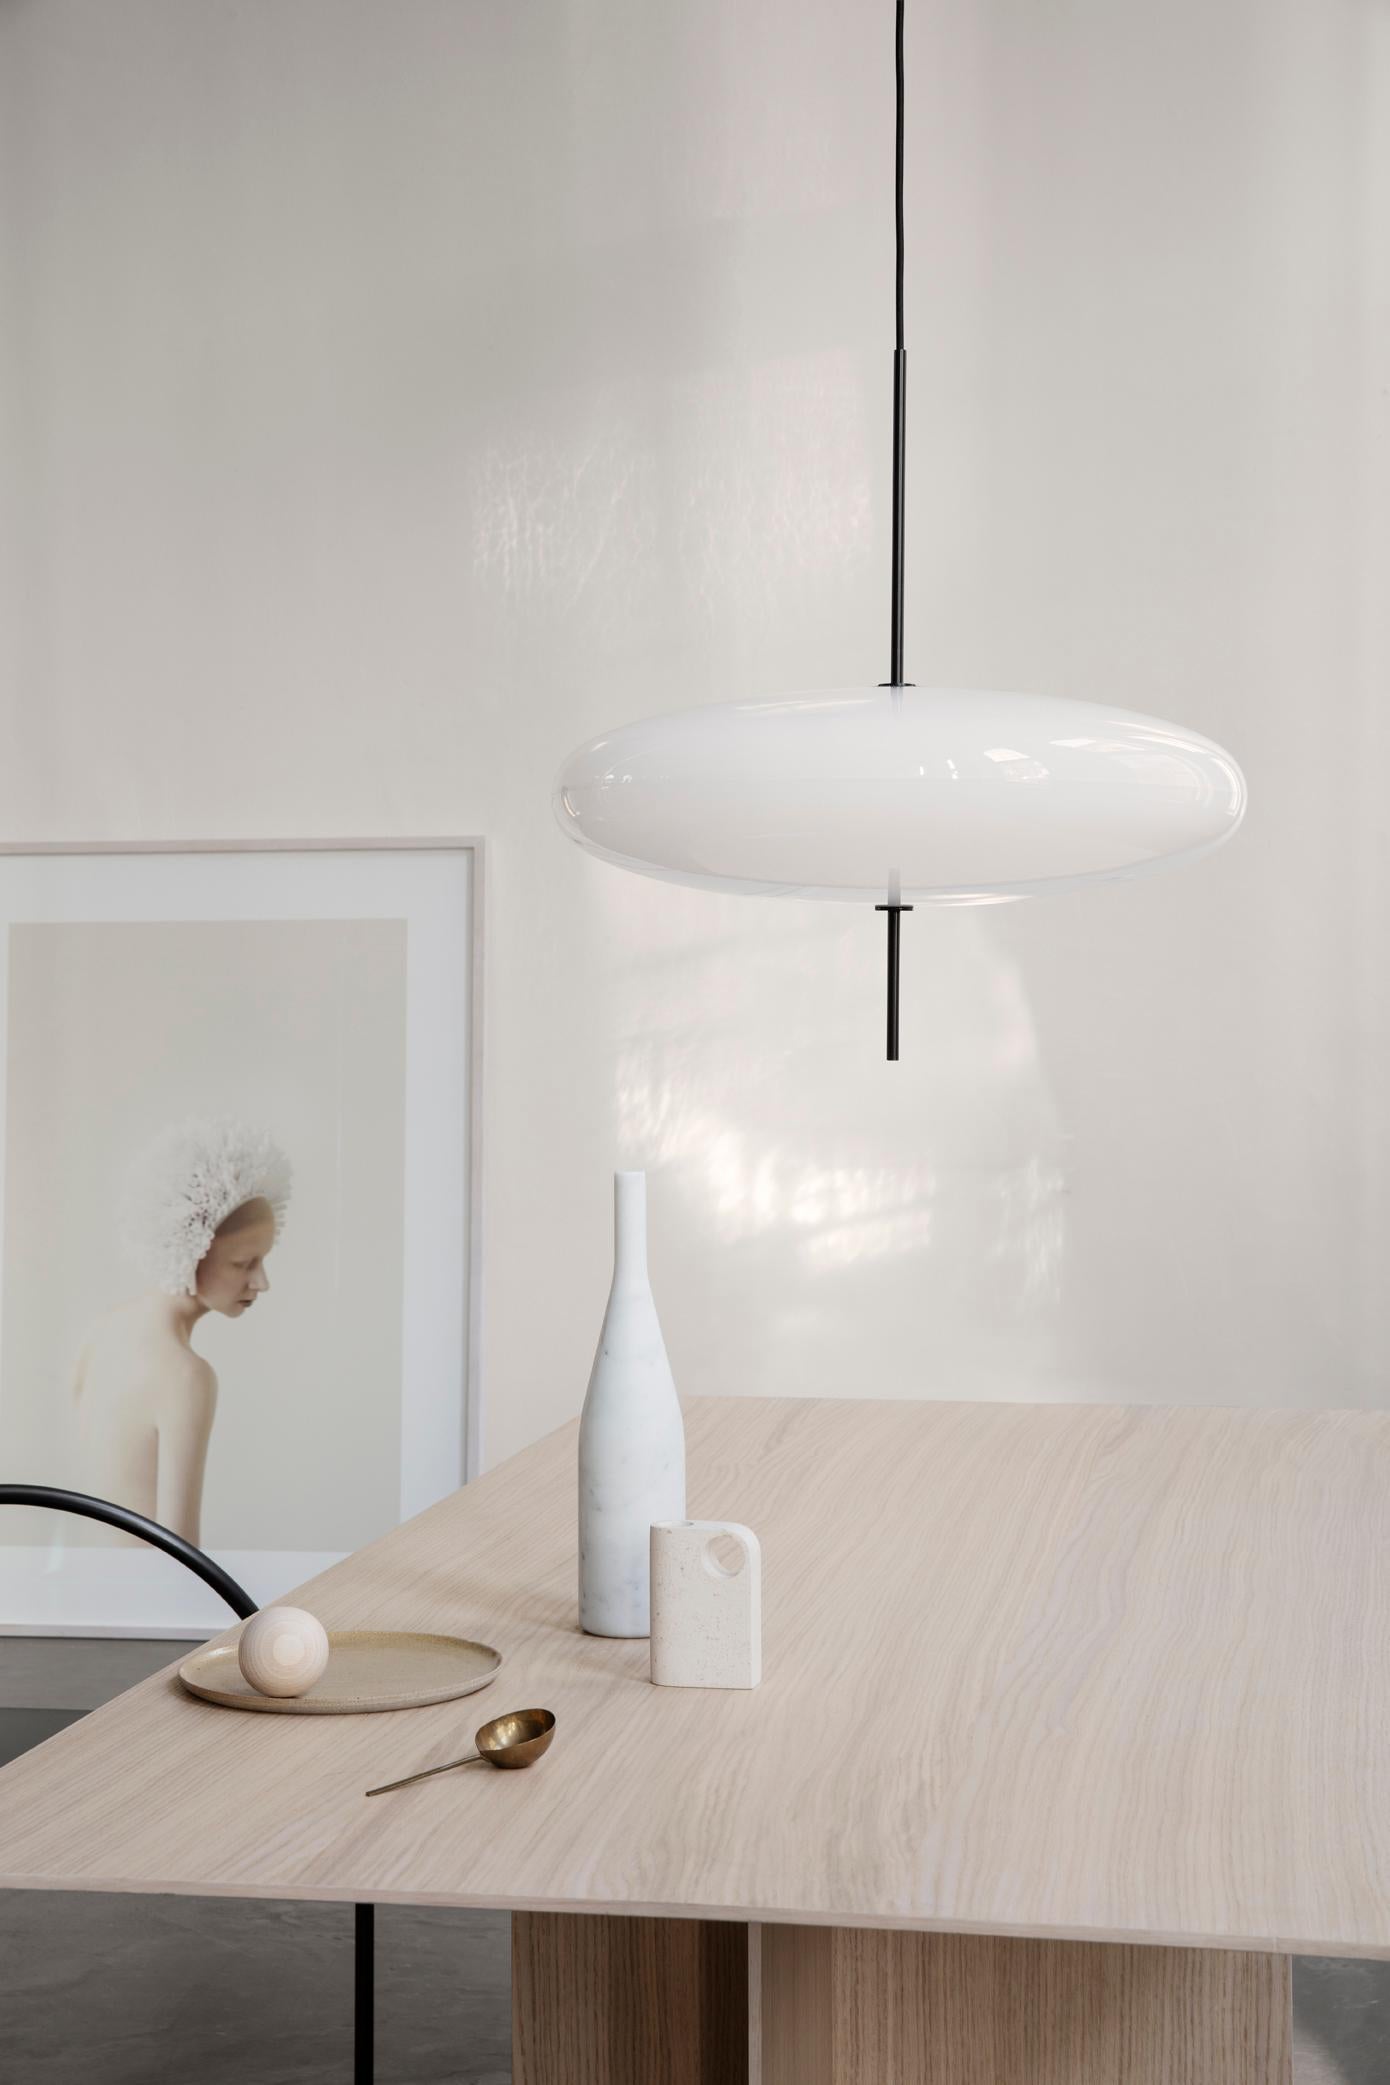 Gino Sarfatti Lamp Model 2065 White Diffuser, Black Hardware, for Astep 4